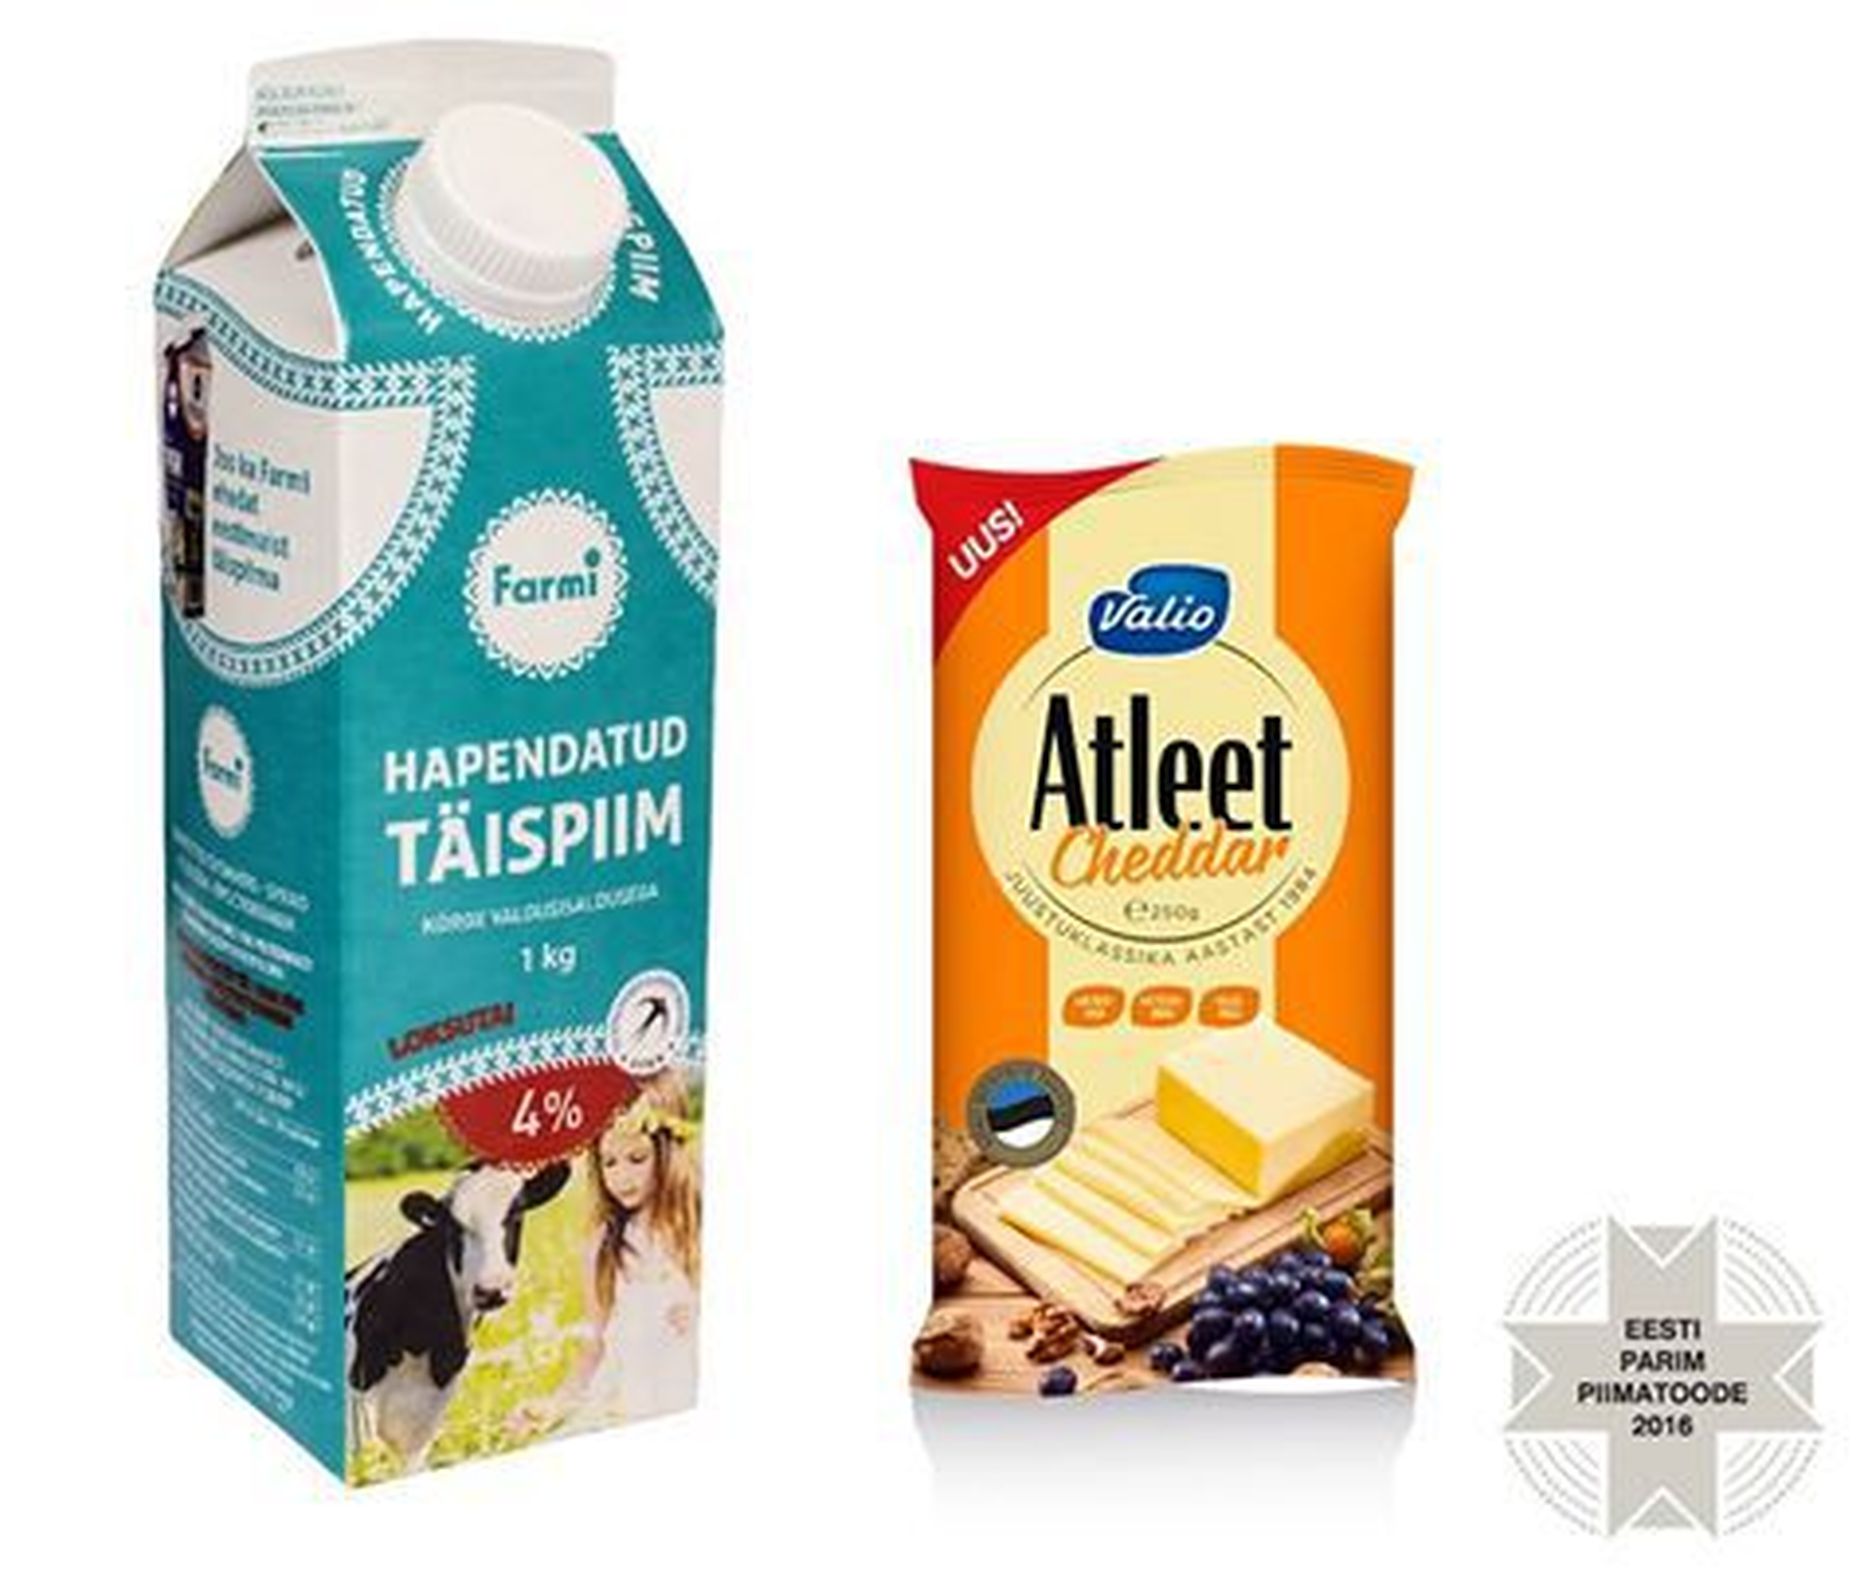 Valio Atleet Cheddar juust ning Farmi hapendatud täispiim valiti parimateks piimatoodeteks.